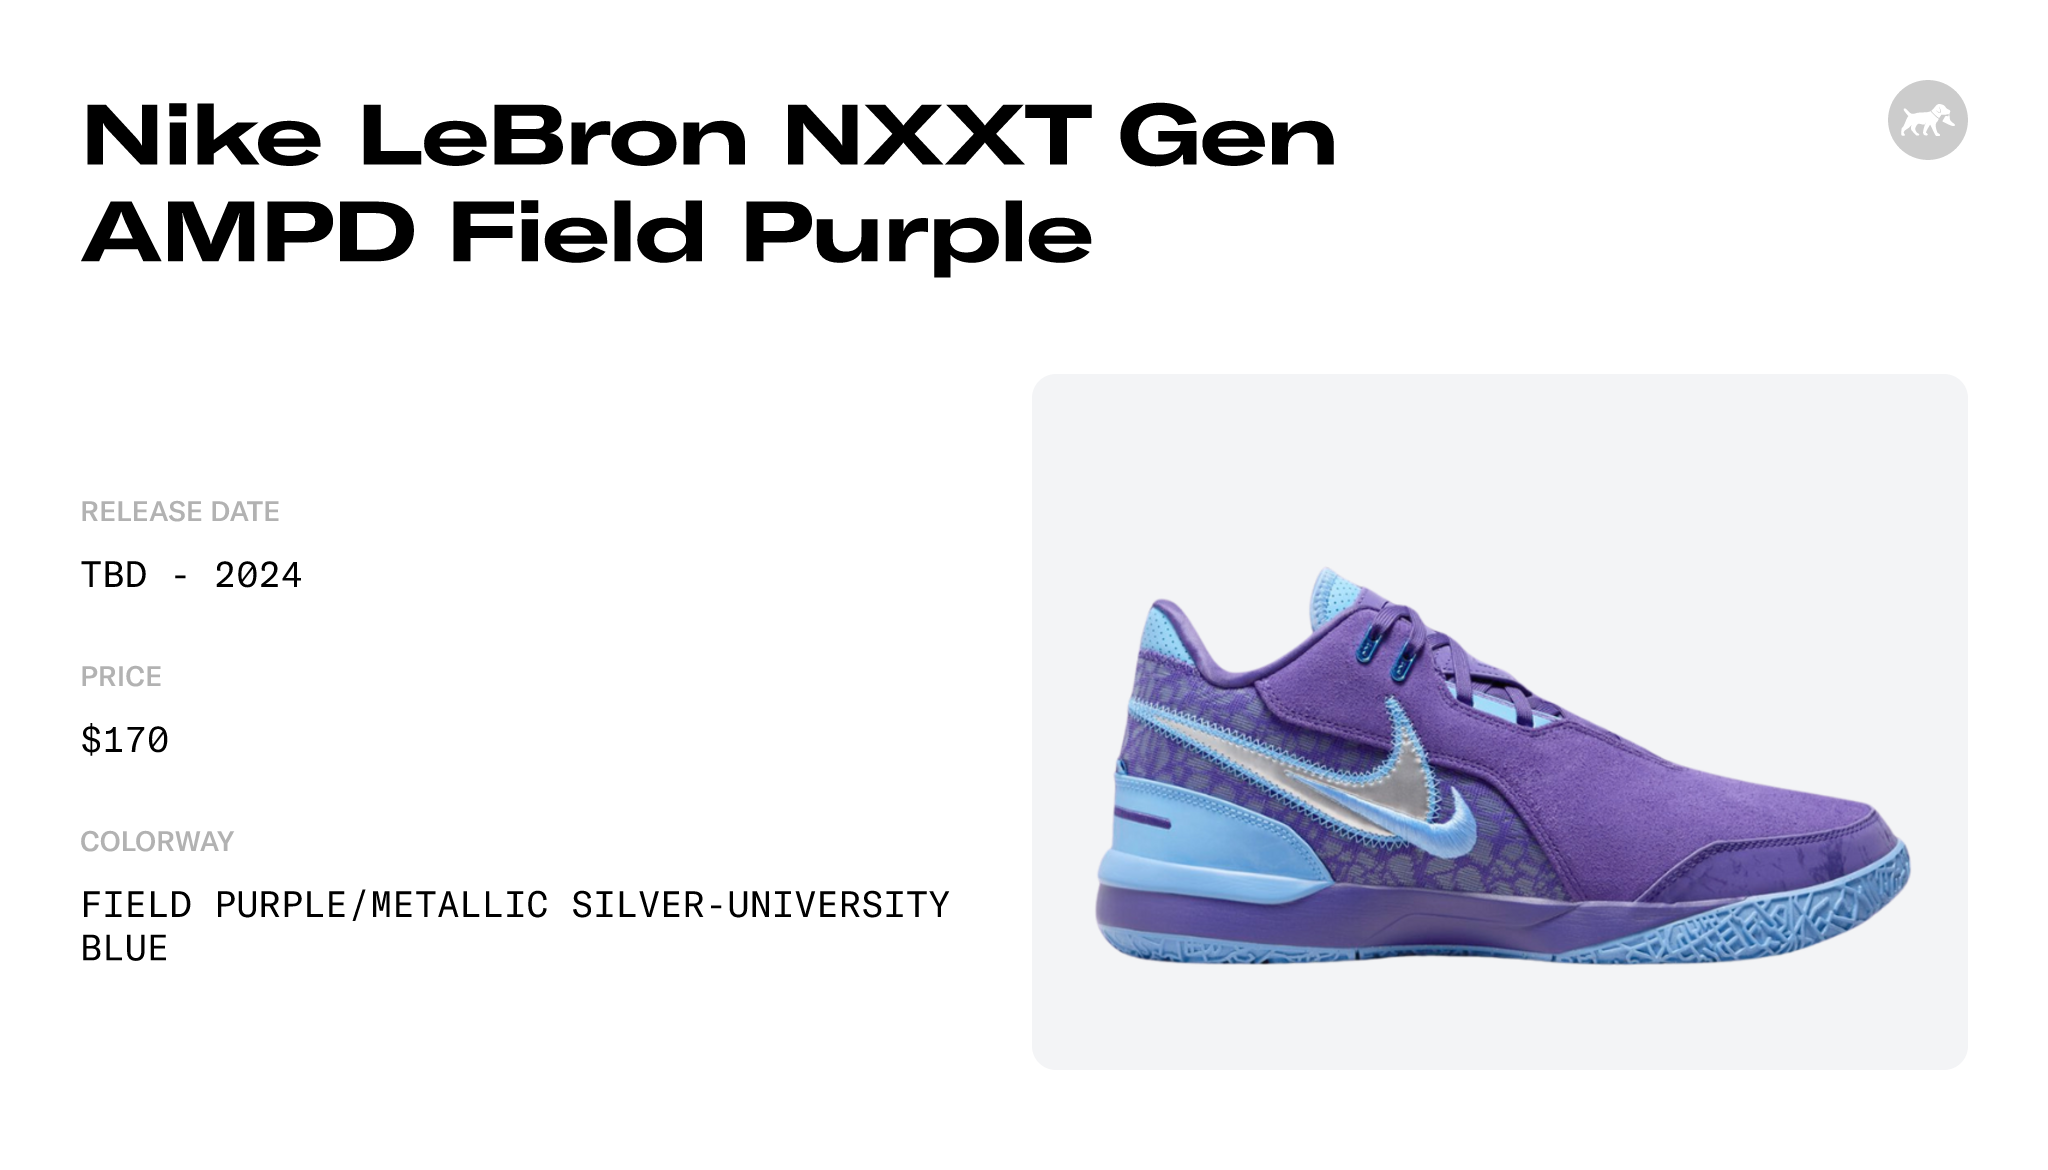 Nike LeBron NXXT Gen AMPD Field Purple - FJ1566-500 Raffles and Release ...